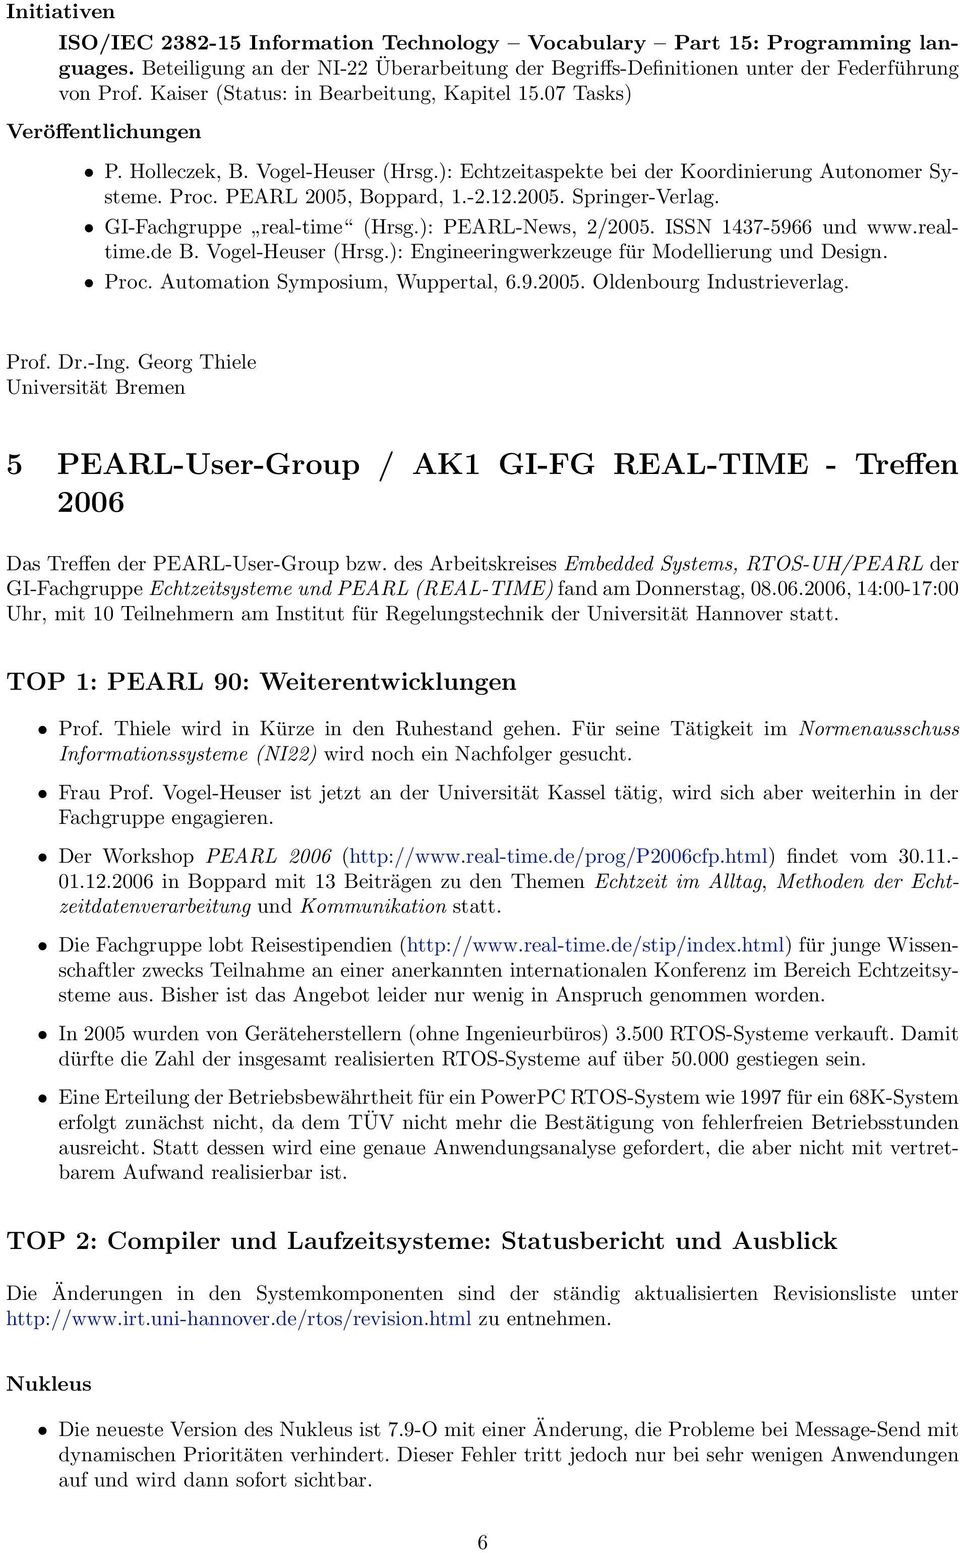 12.2005. Springer-Verlag. GI-Fachgruppe real-time (Hrsg.): PEARL-News, 2/2005. ISSN 1437-5966 und www.realtime.de B. Vogel-Heuser (Hrsg.): Engineeringwerkzeuge für Modellierung und Design. Proc.